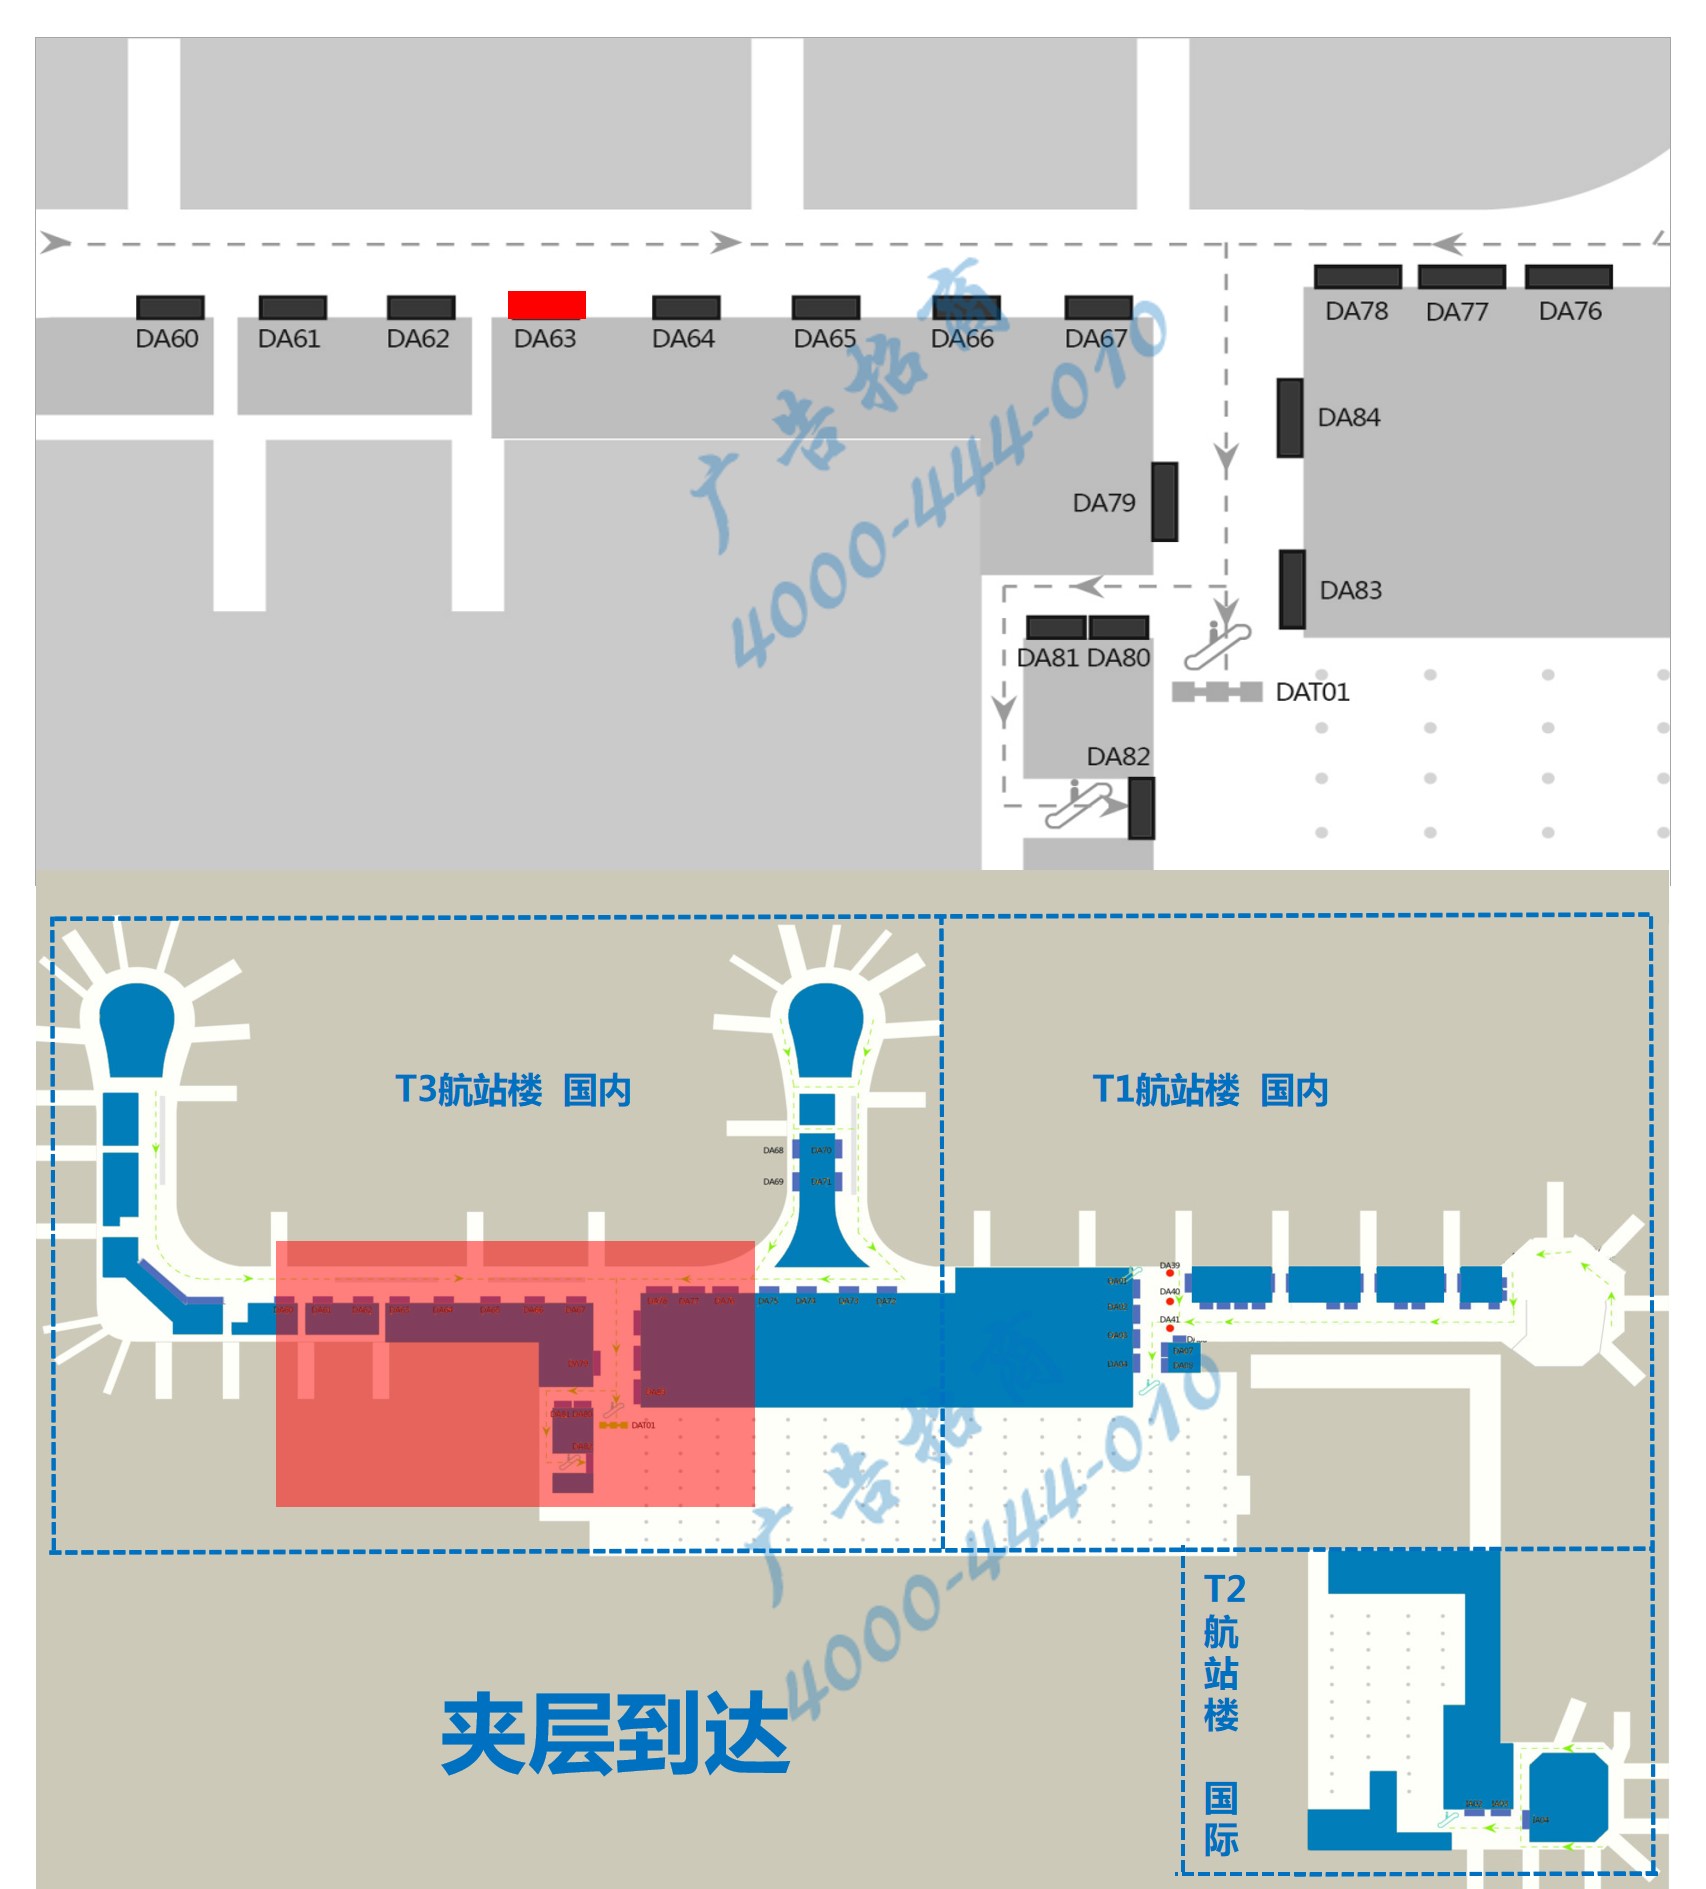 杭州萧山机场广告-T3到达通廊自动扶梯旁灯箱DA63位置图